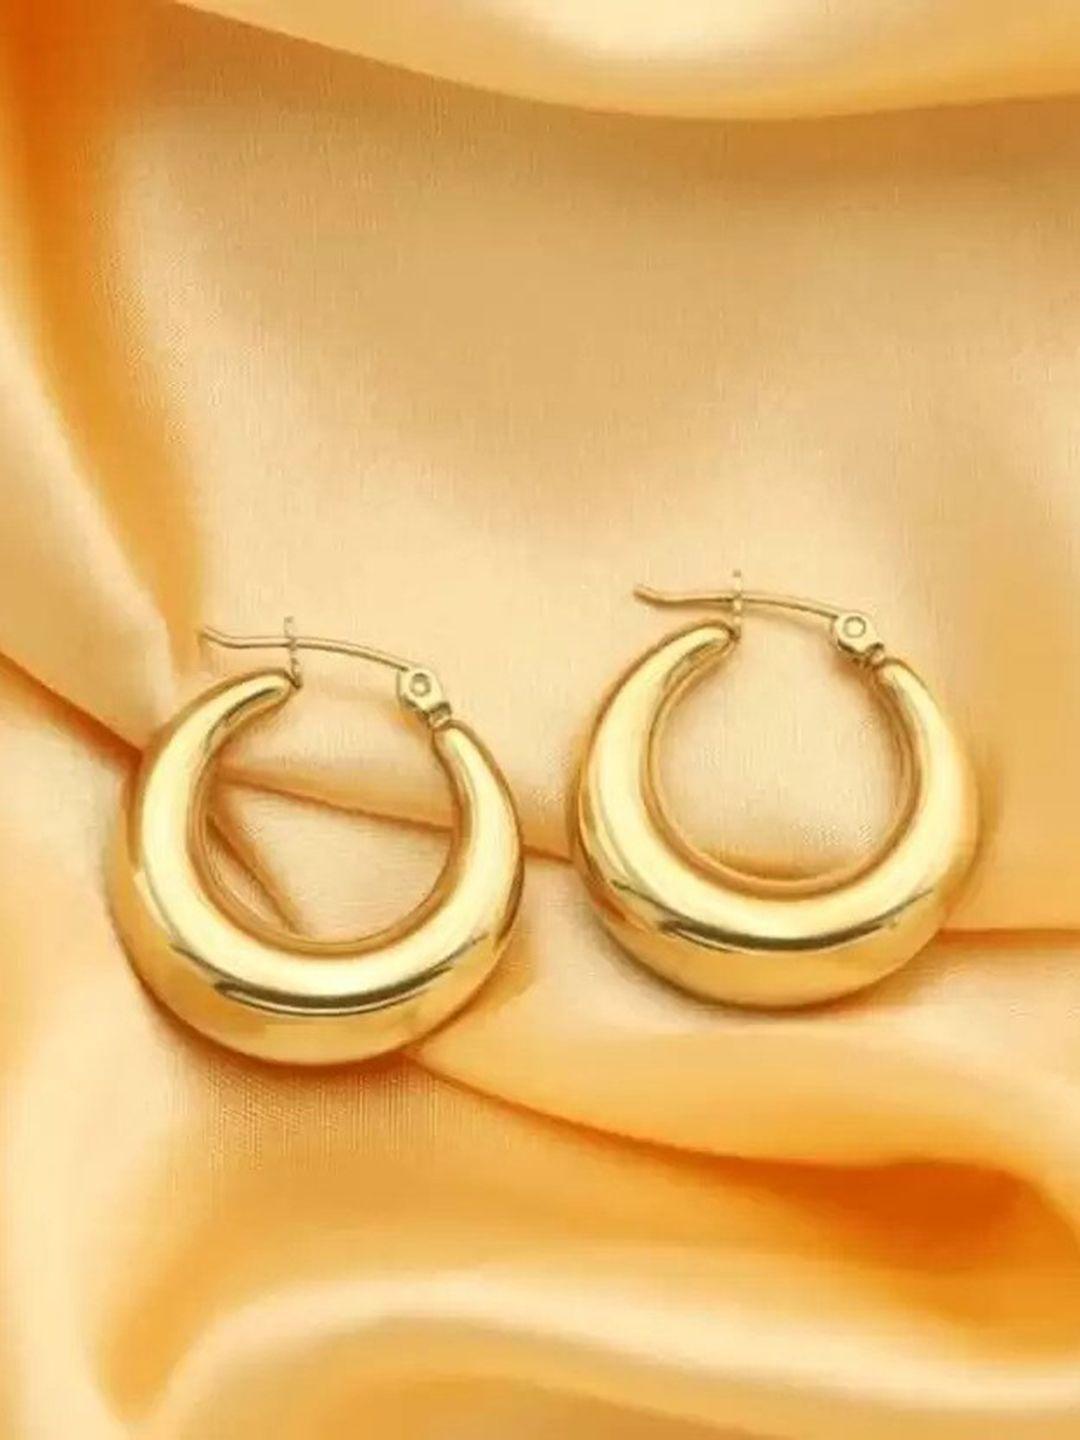 krystalz gold-plated stainless steel circular hoop earrings